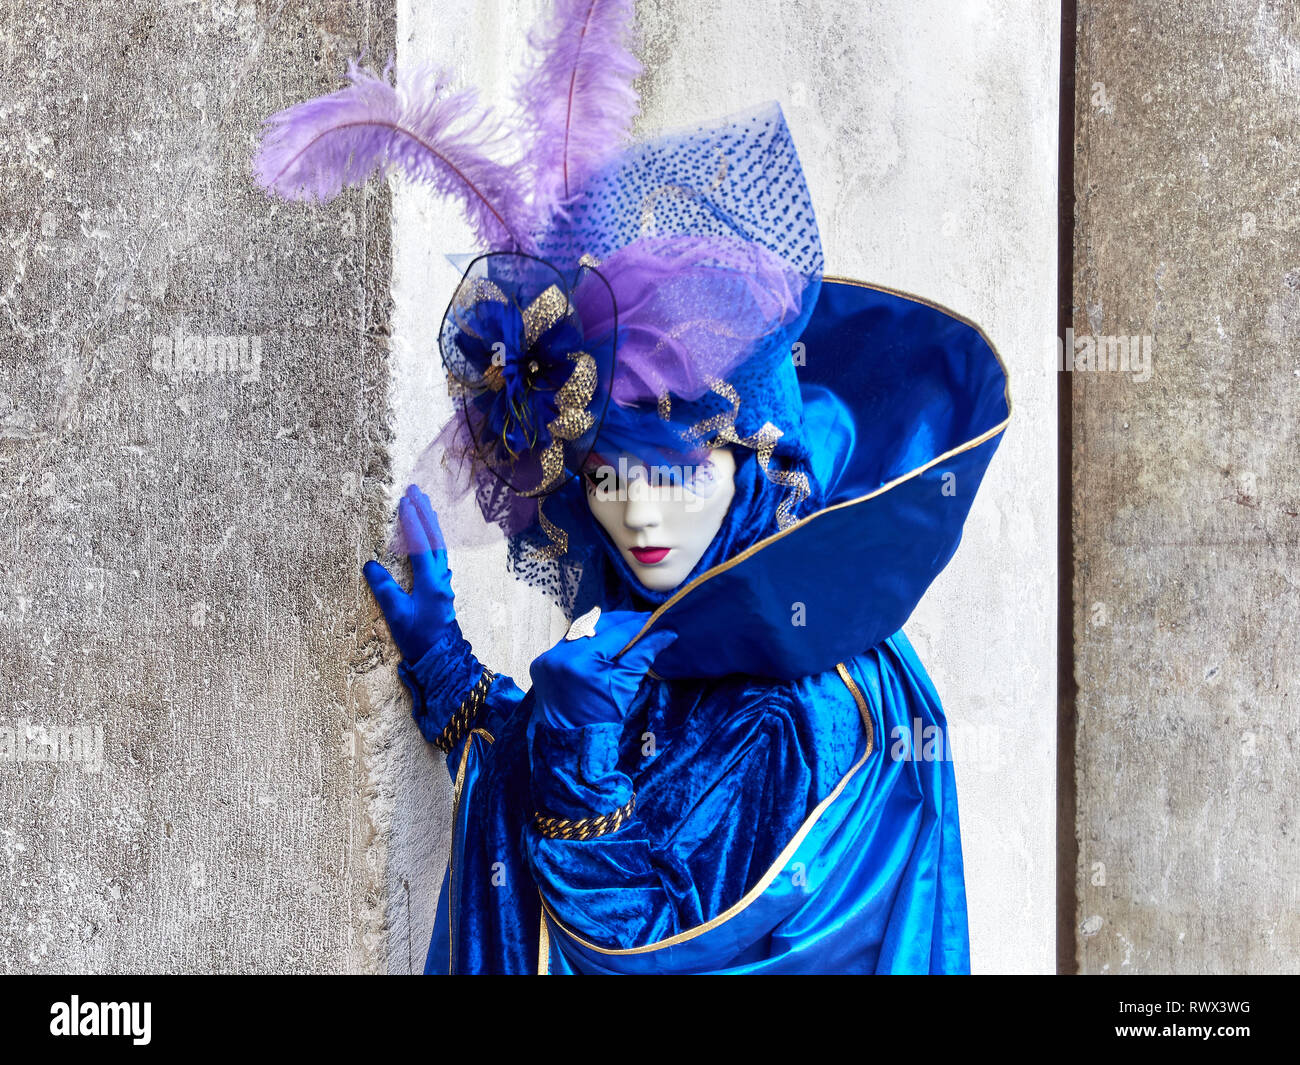 Venise, Italie - 2 mars 2019 personne habillée d'un costume Vénitien typique pendant le Carnaval de Venise posent pour une photo Banque D'Images